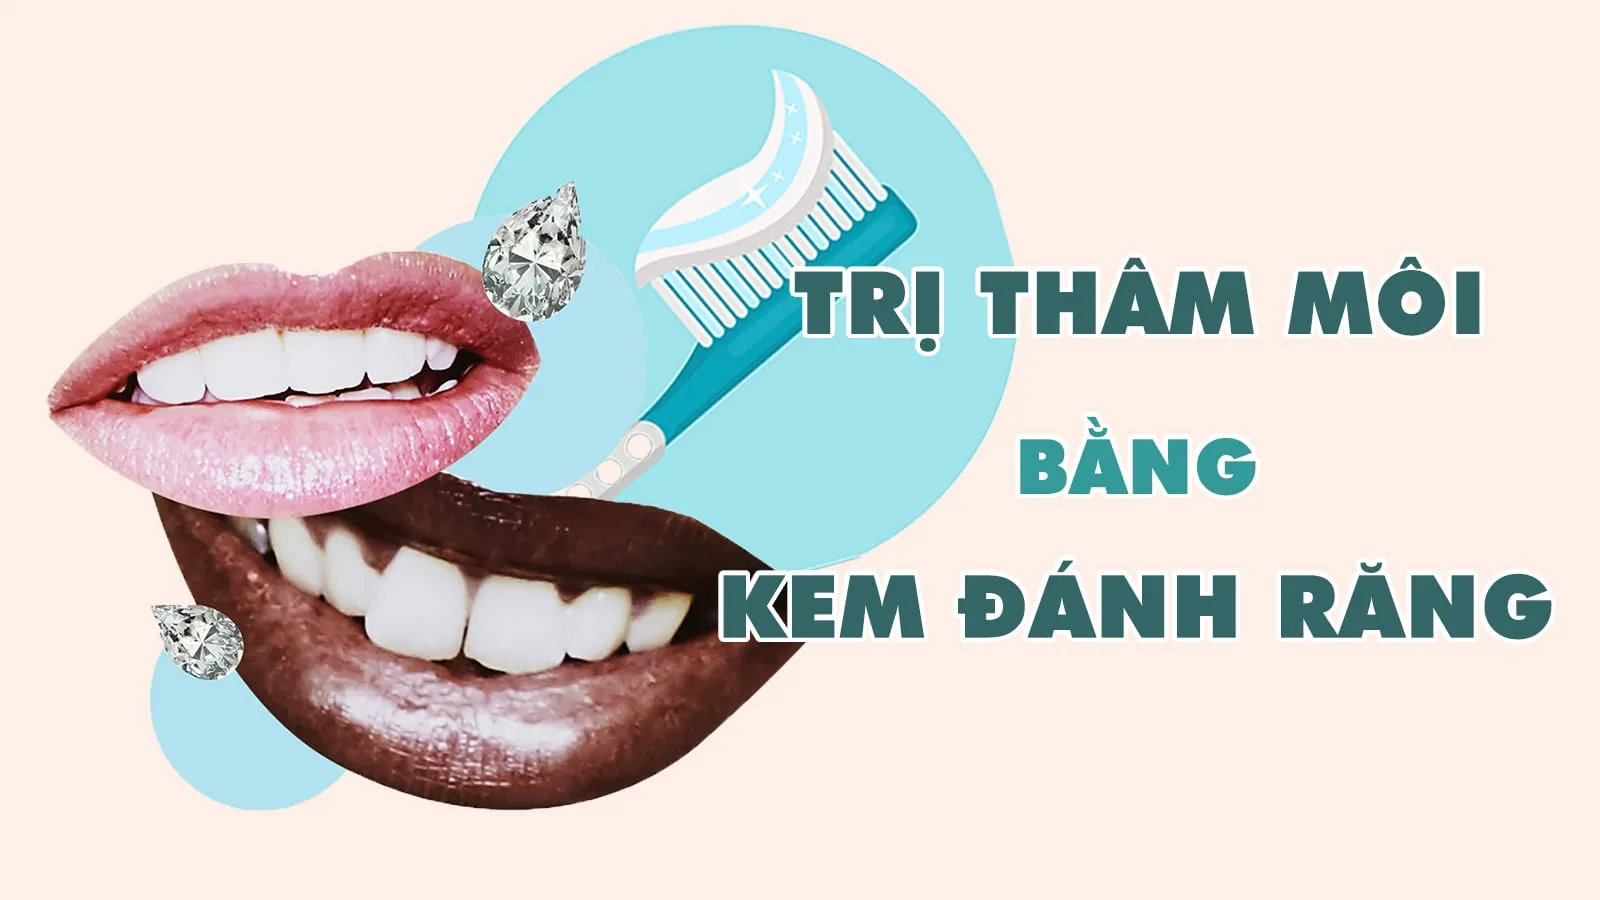 5 cách trị thâm môi bằng kem đánh răng cấp tốc, đơn giản tại nhà